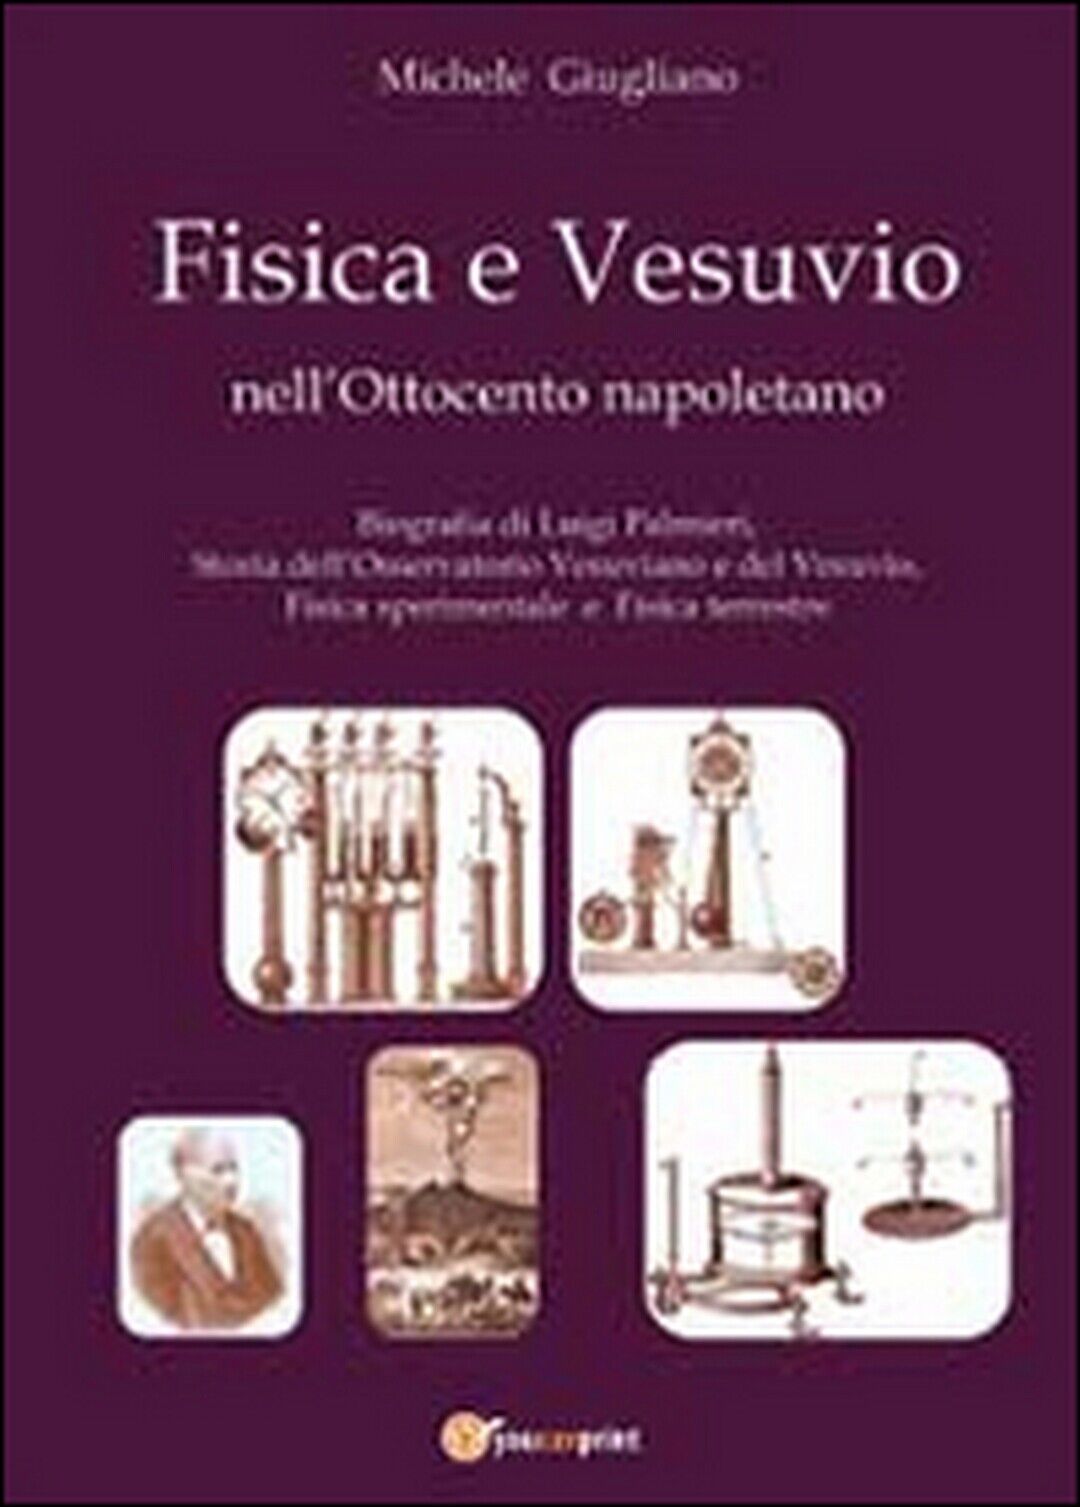 Fisica e Vesuvio nelL'Ottocento napoletano  di Michele Giugliano,  2013